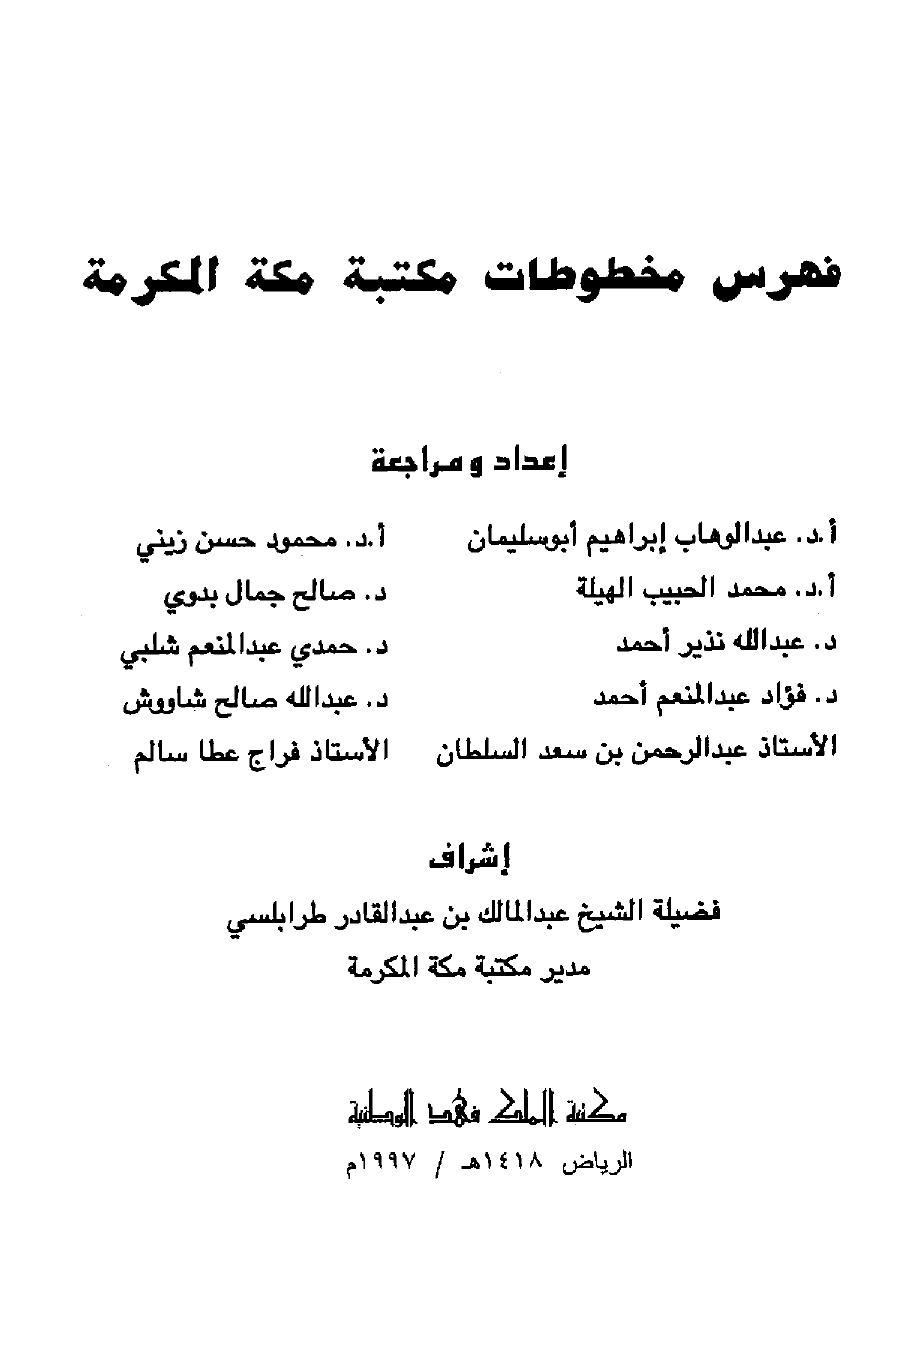 تنزيل وتحميل كتاِب فهرس مخطوطات مكتبة مكة المكرمة pdf برابط مباشر مجاناً 